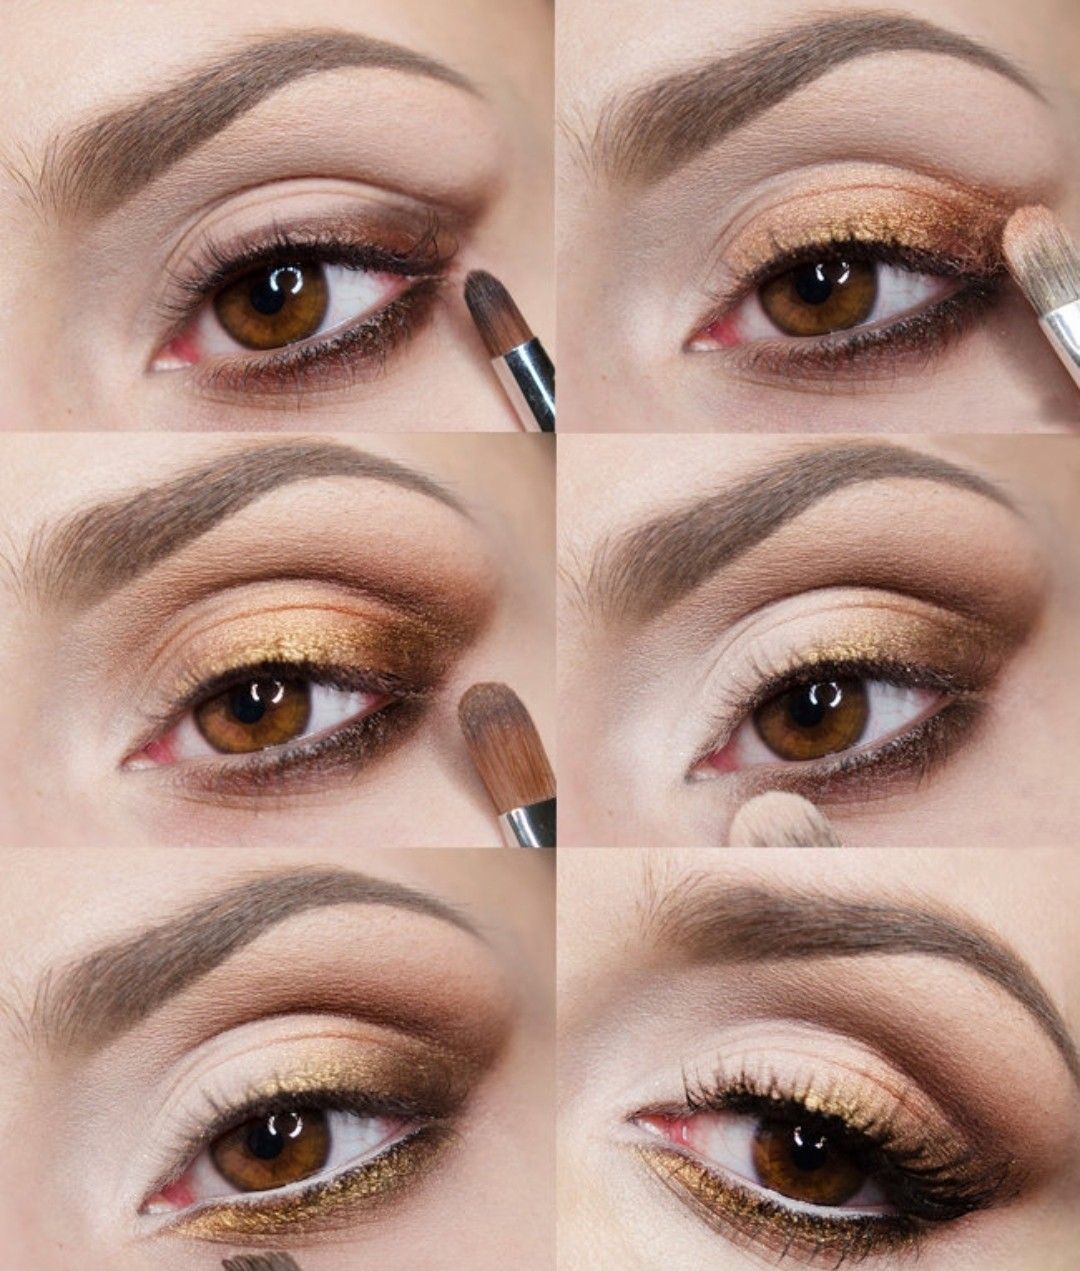 ᐉ техника нанесения теней на глаза, схема макияжа, способы, правила. как красить глаза пошагово, фото с описанием - salon-nagorkogo.ru